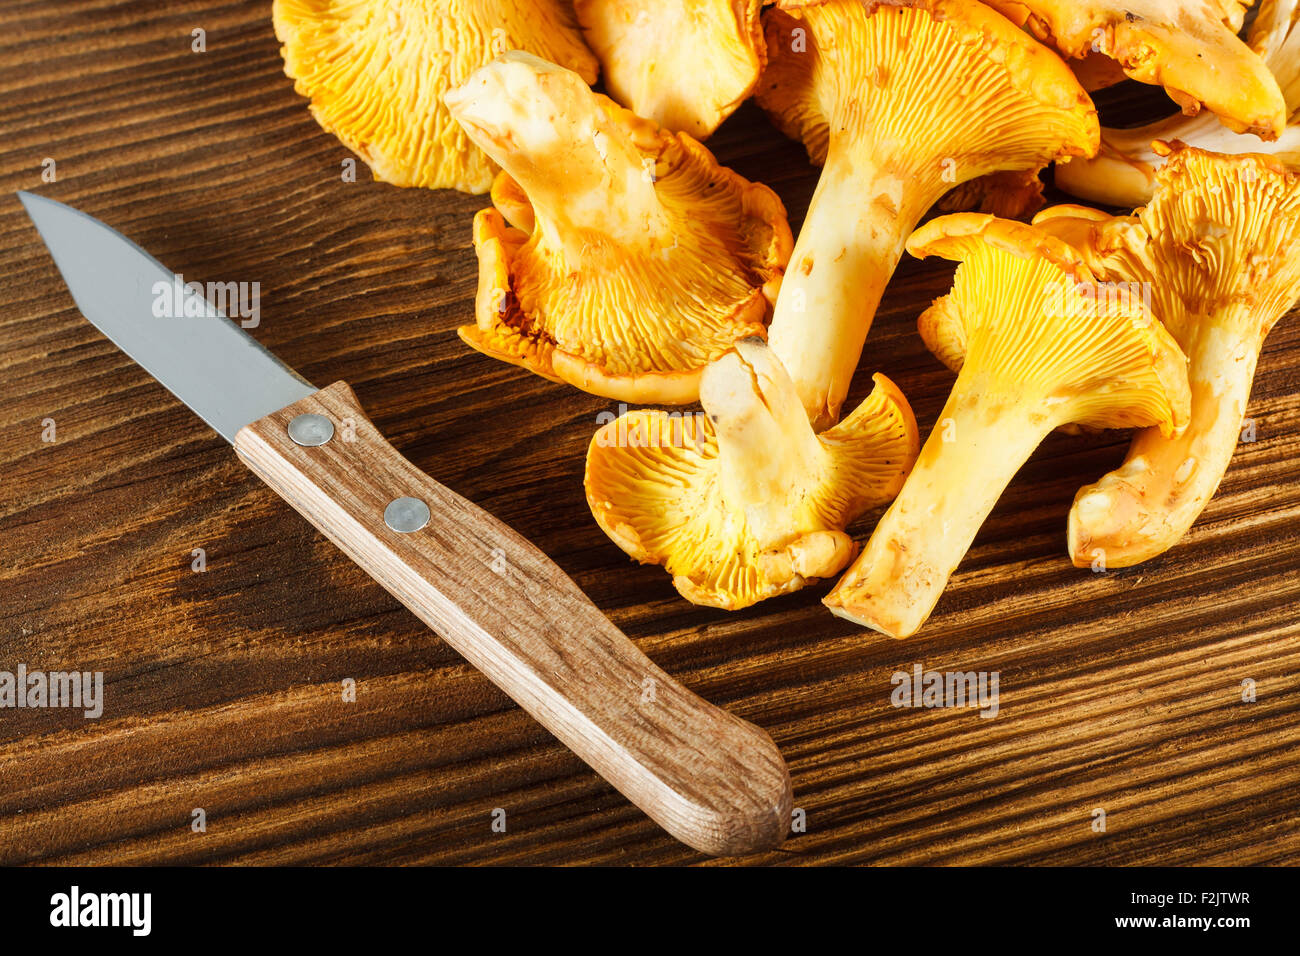 Finferli giallo e il coltello sul tavolo di legno Foto Stock